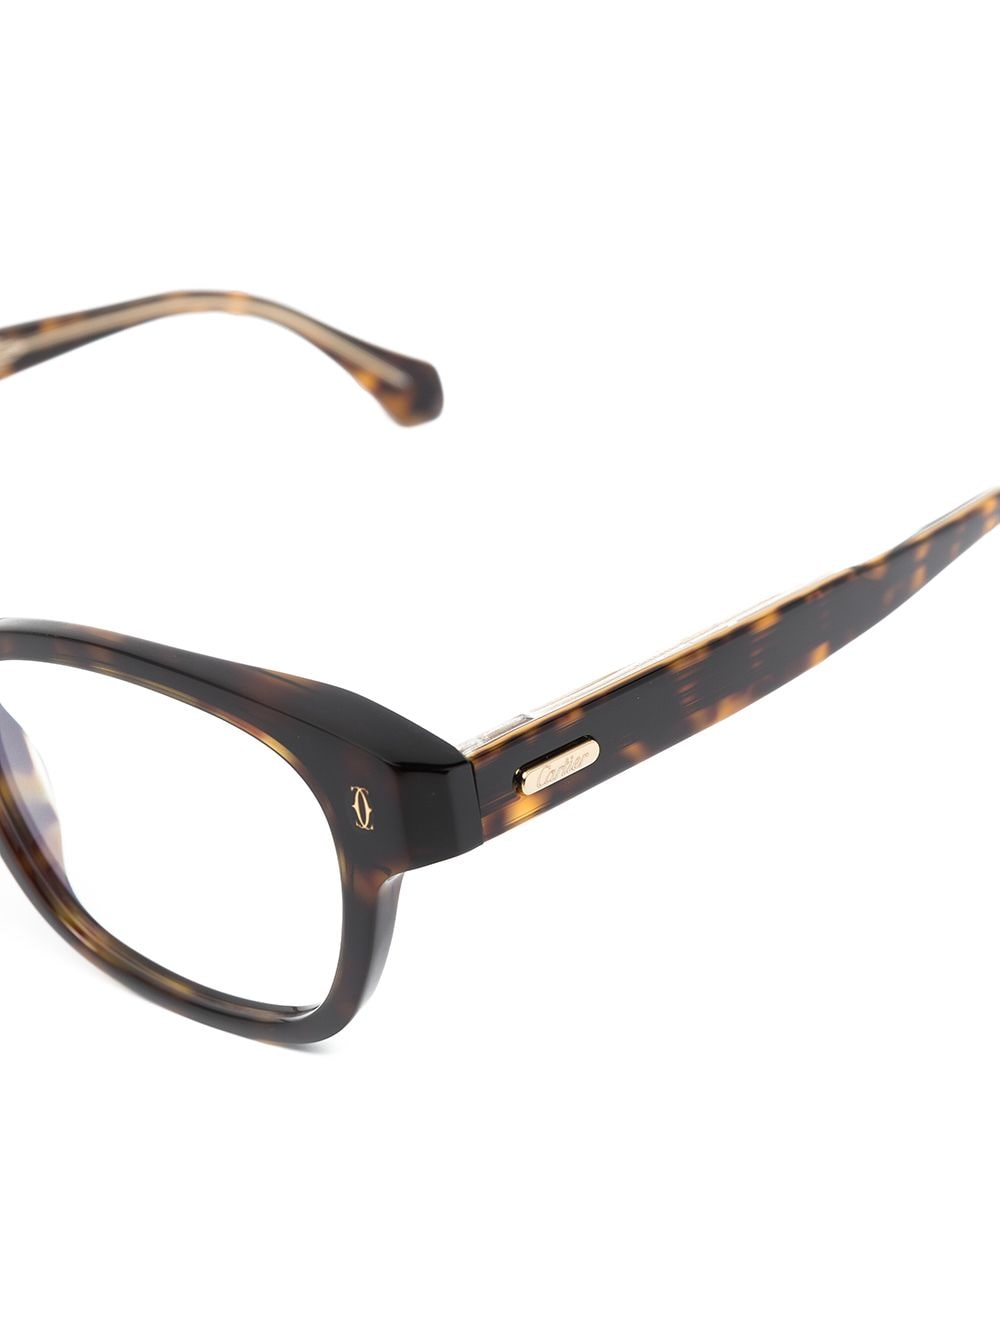 фото Cartier eyewear очки в круглой оправе черепаховой расцветки